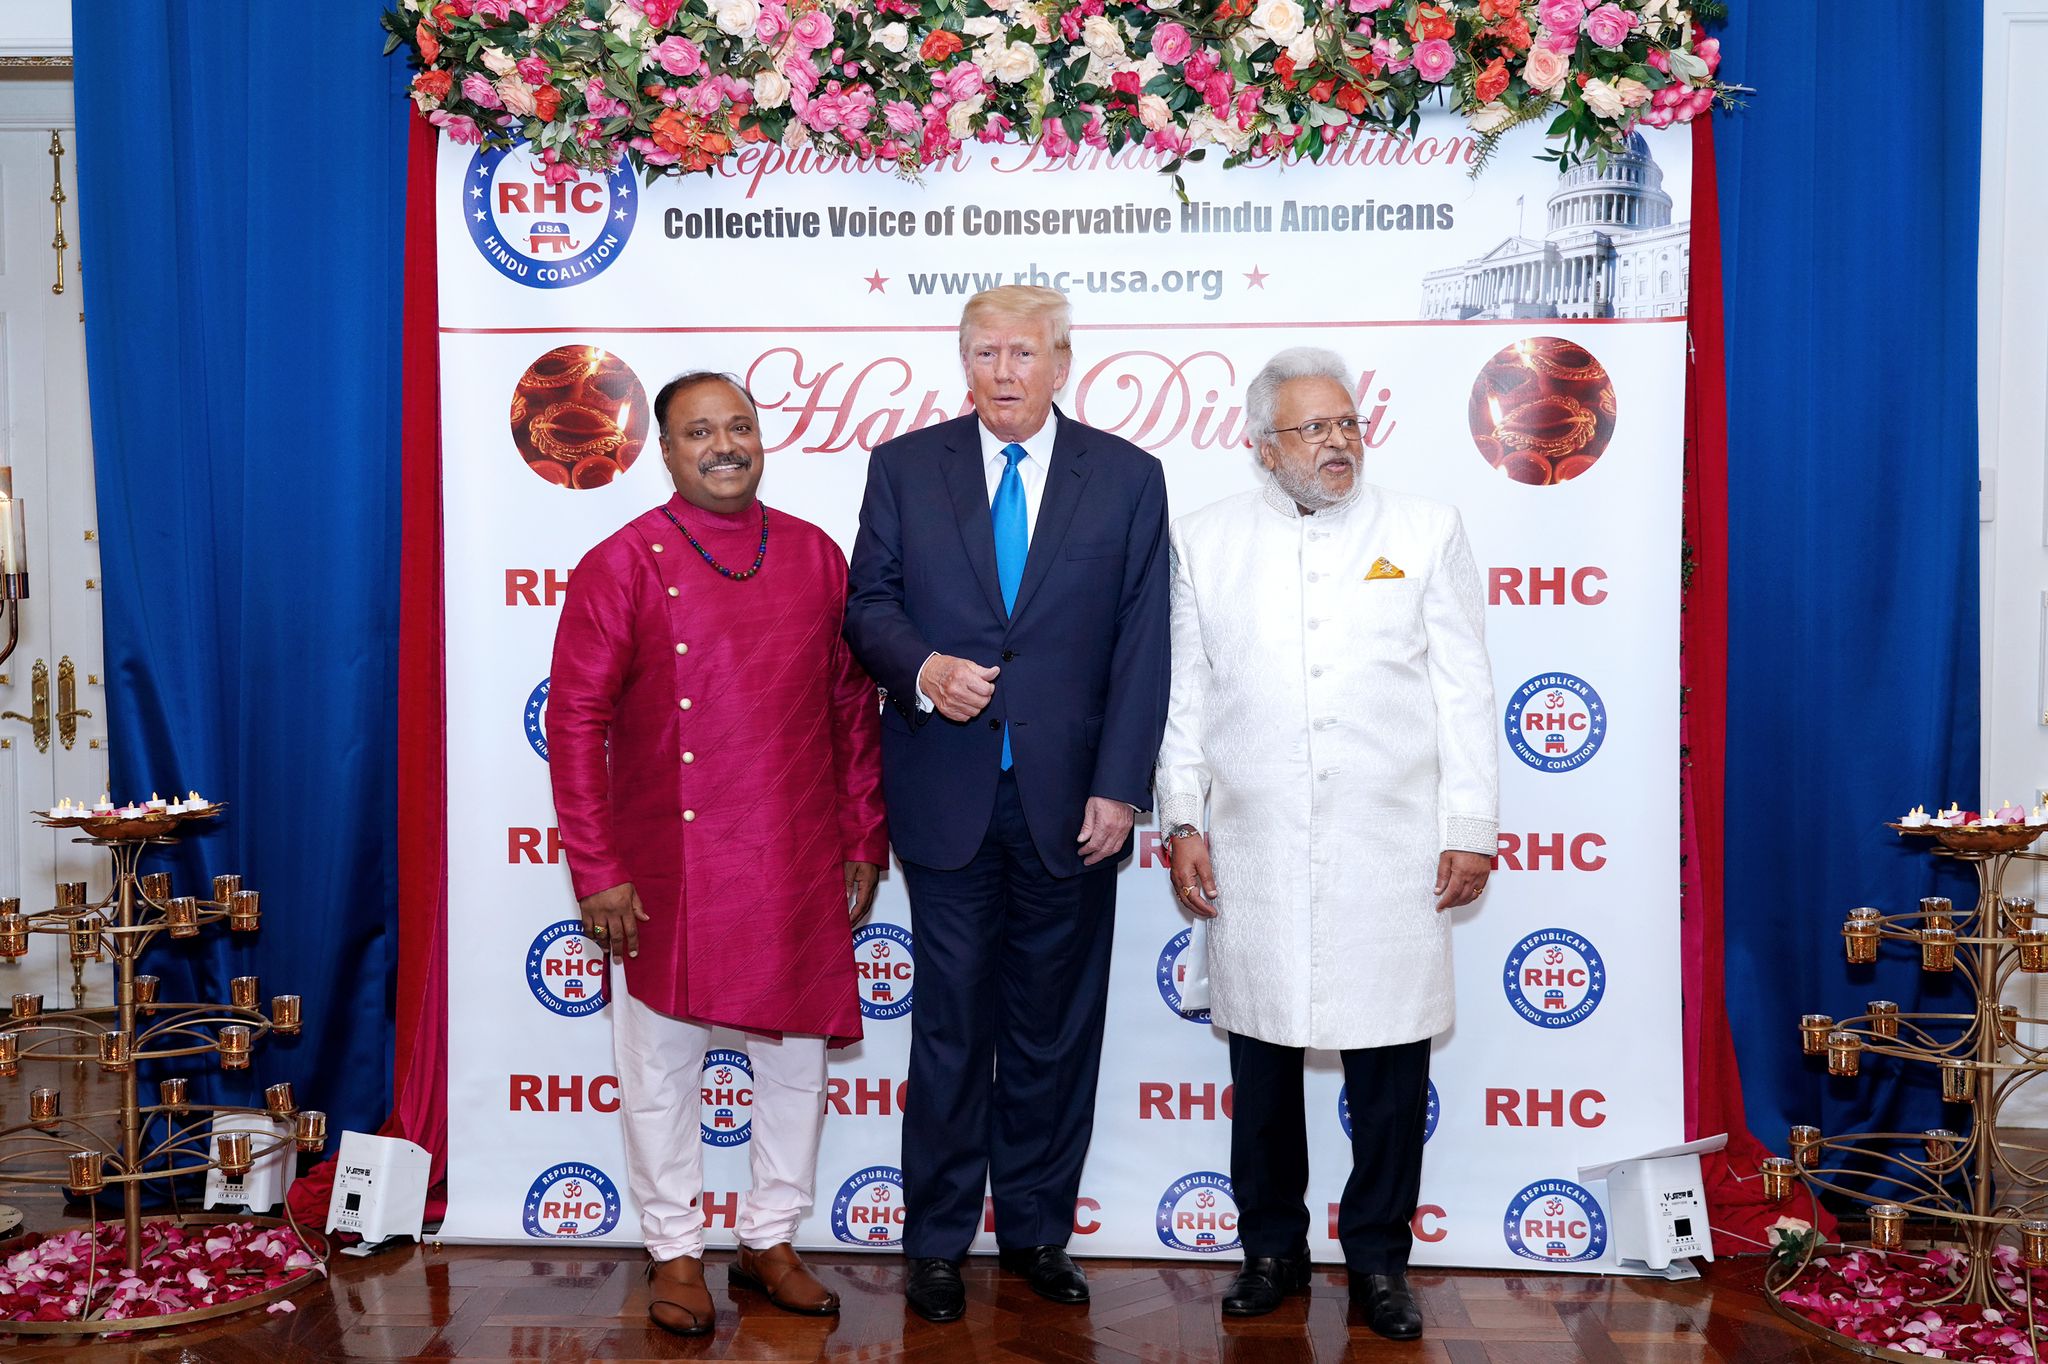 Republican Hindu Coalition